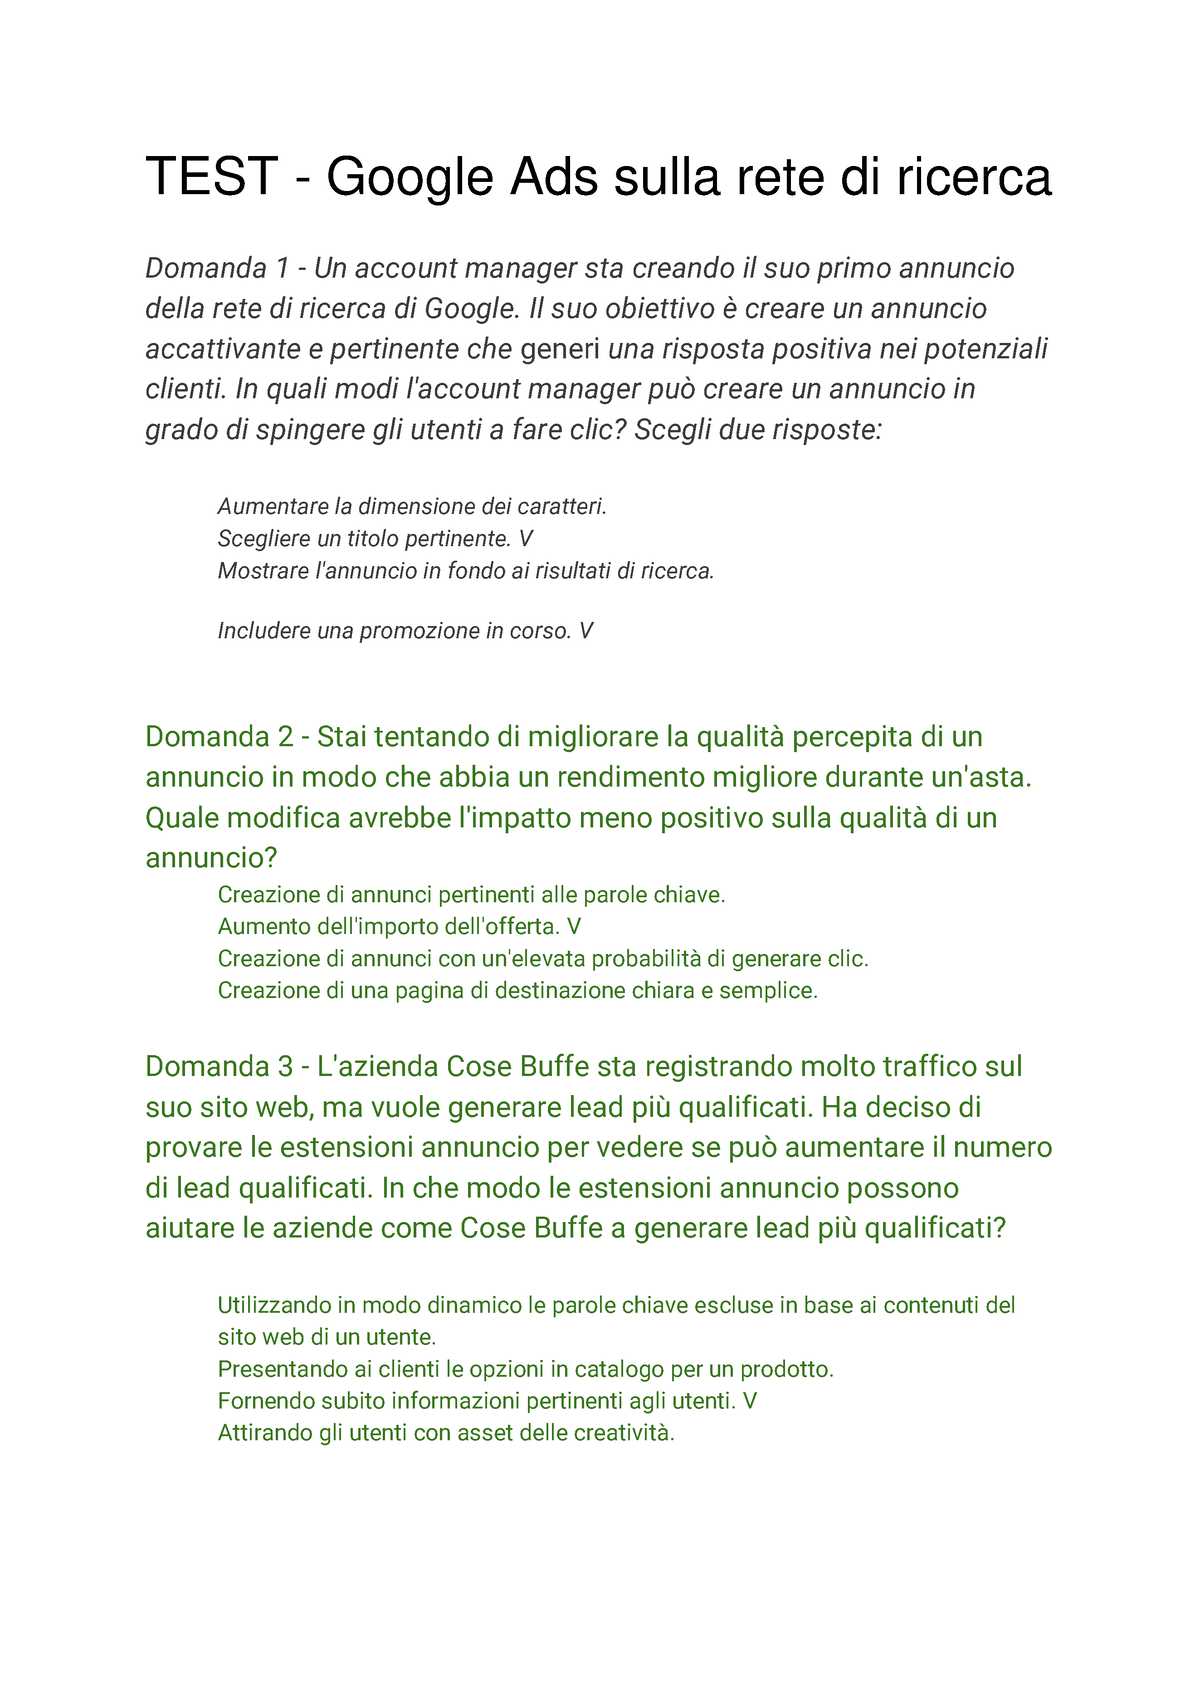 TEST - Google Ads sulla rete di ricerca - Il suo obiettivo Ë creare un  annuncio accattivante e - Studocu